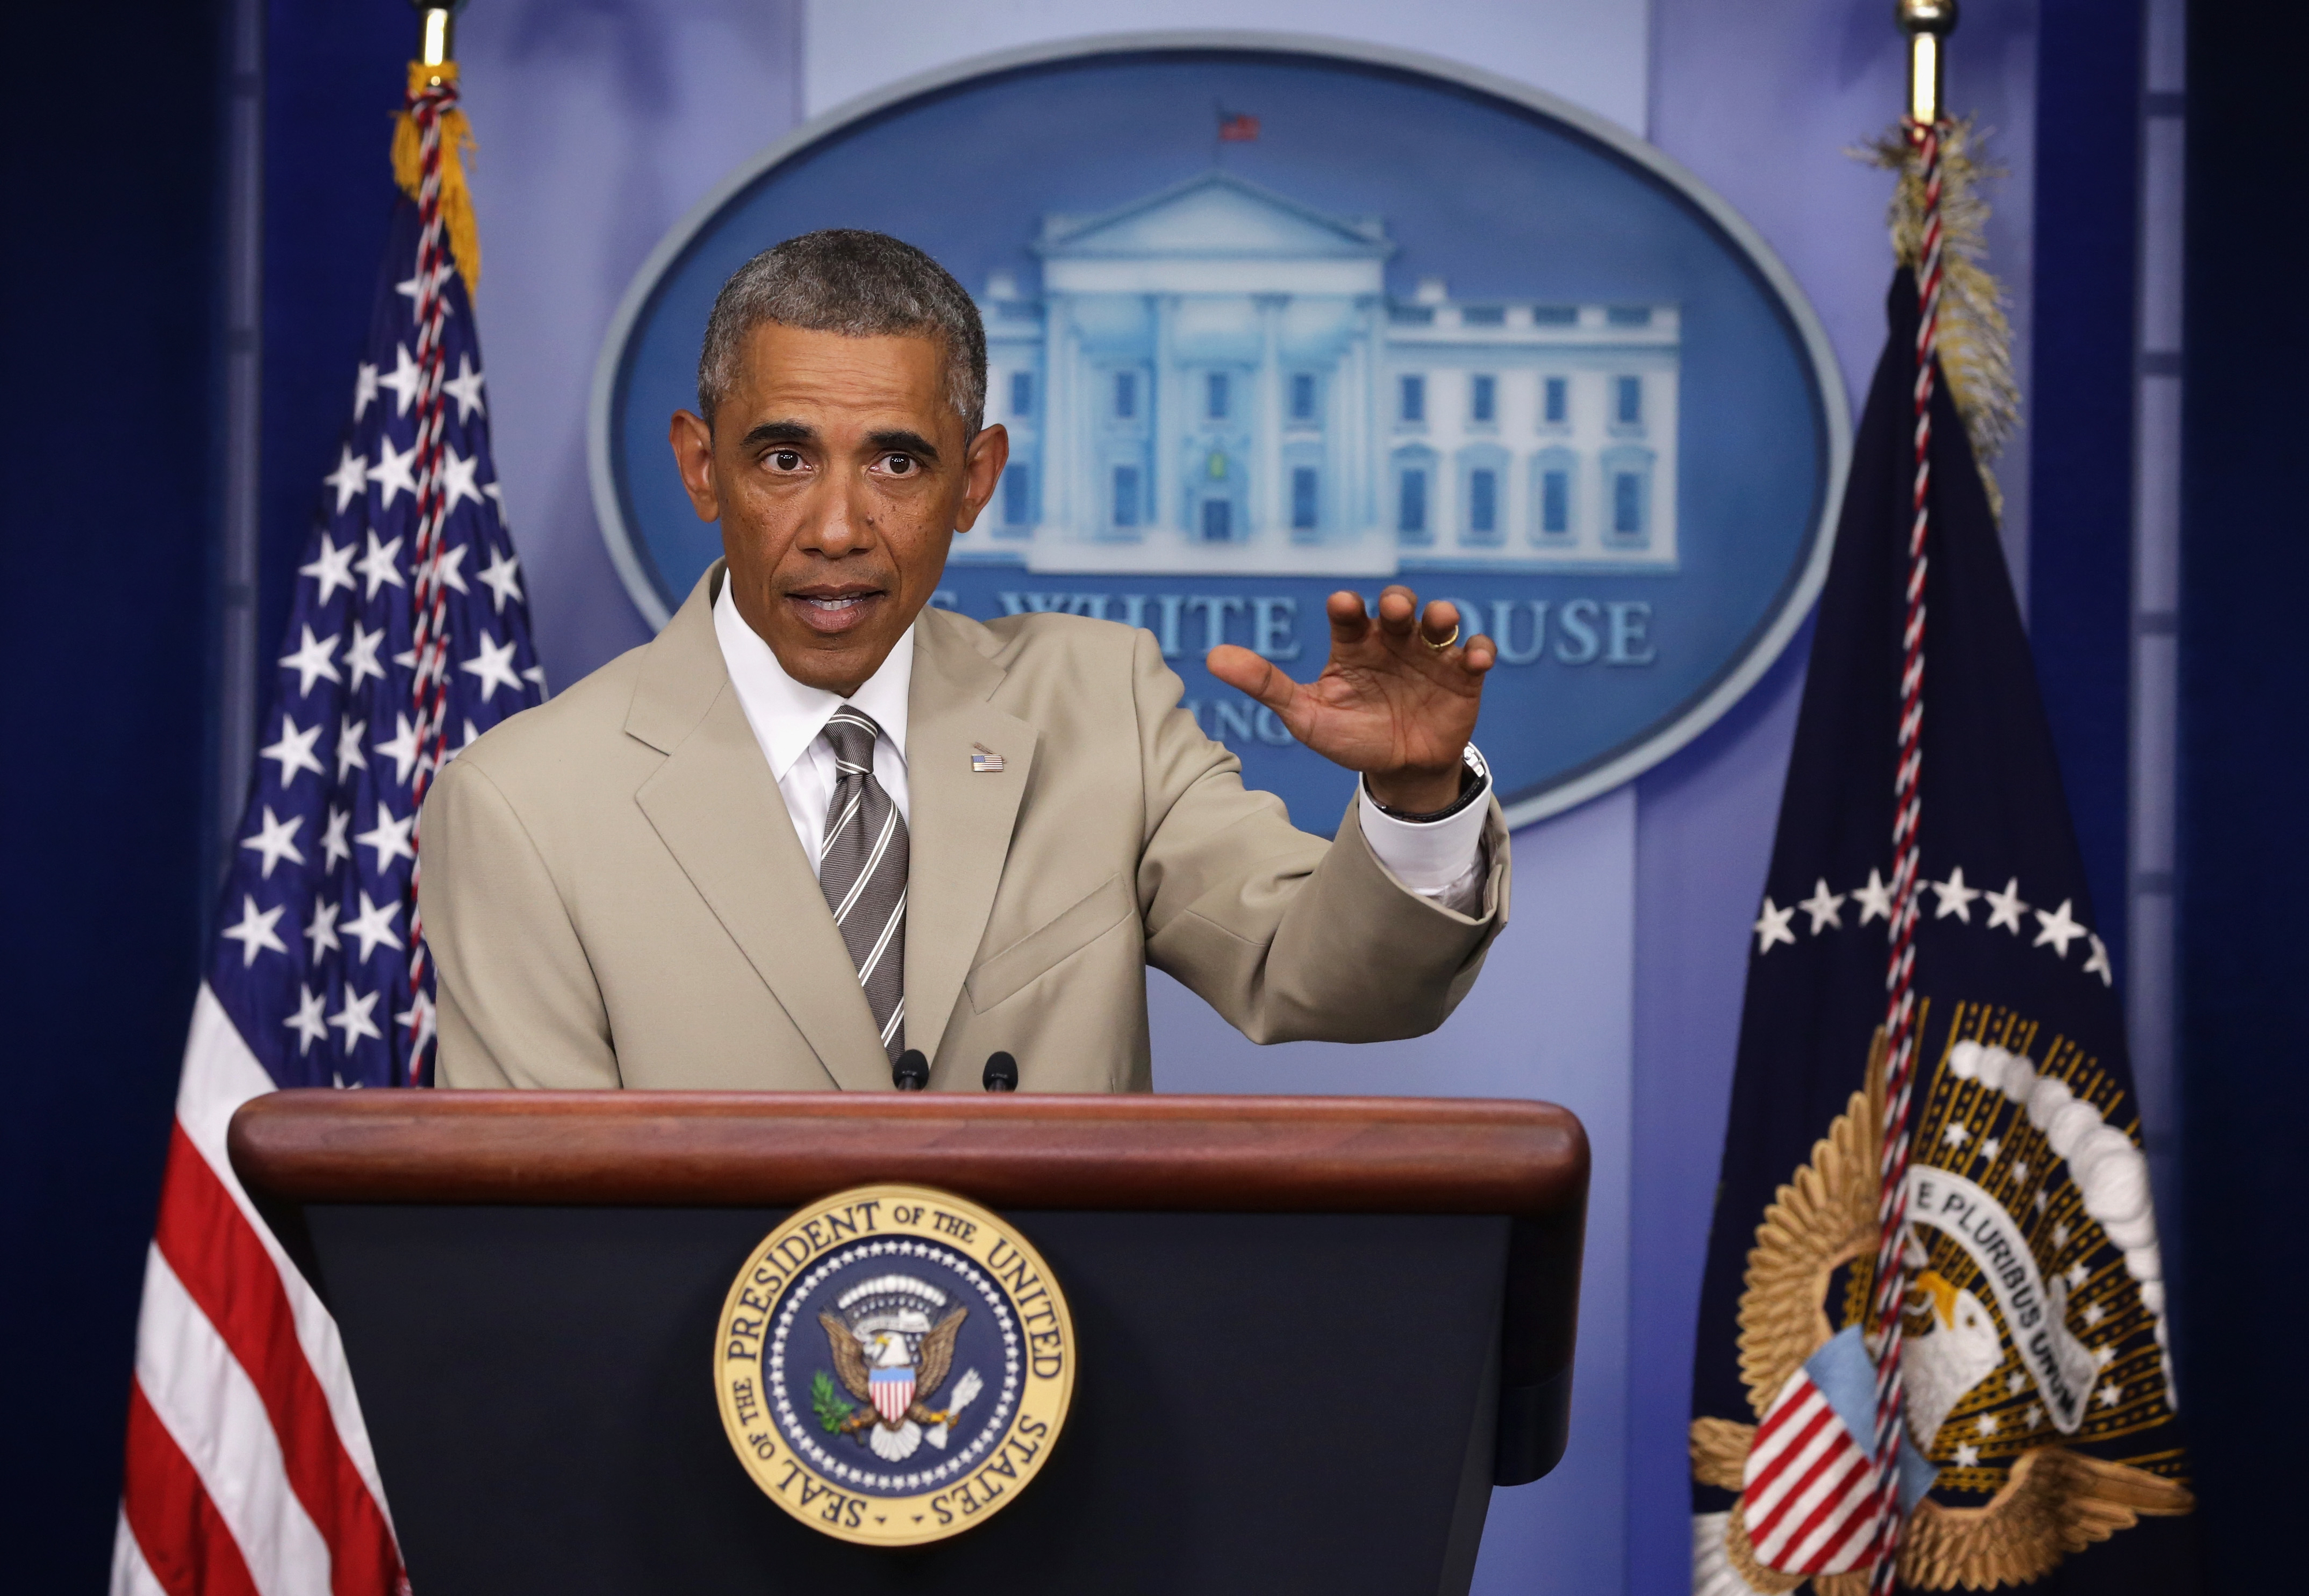 Obama at the podium